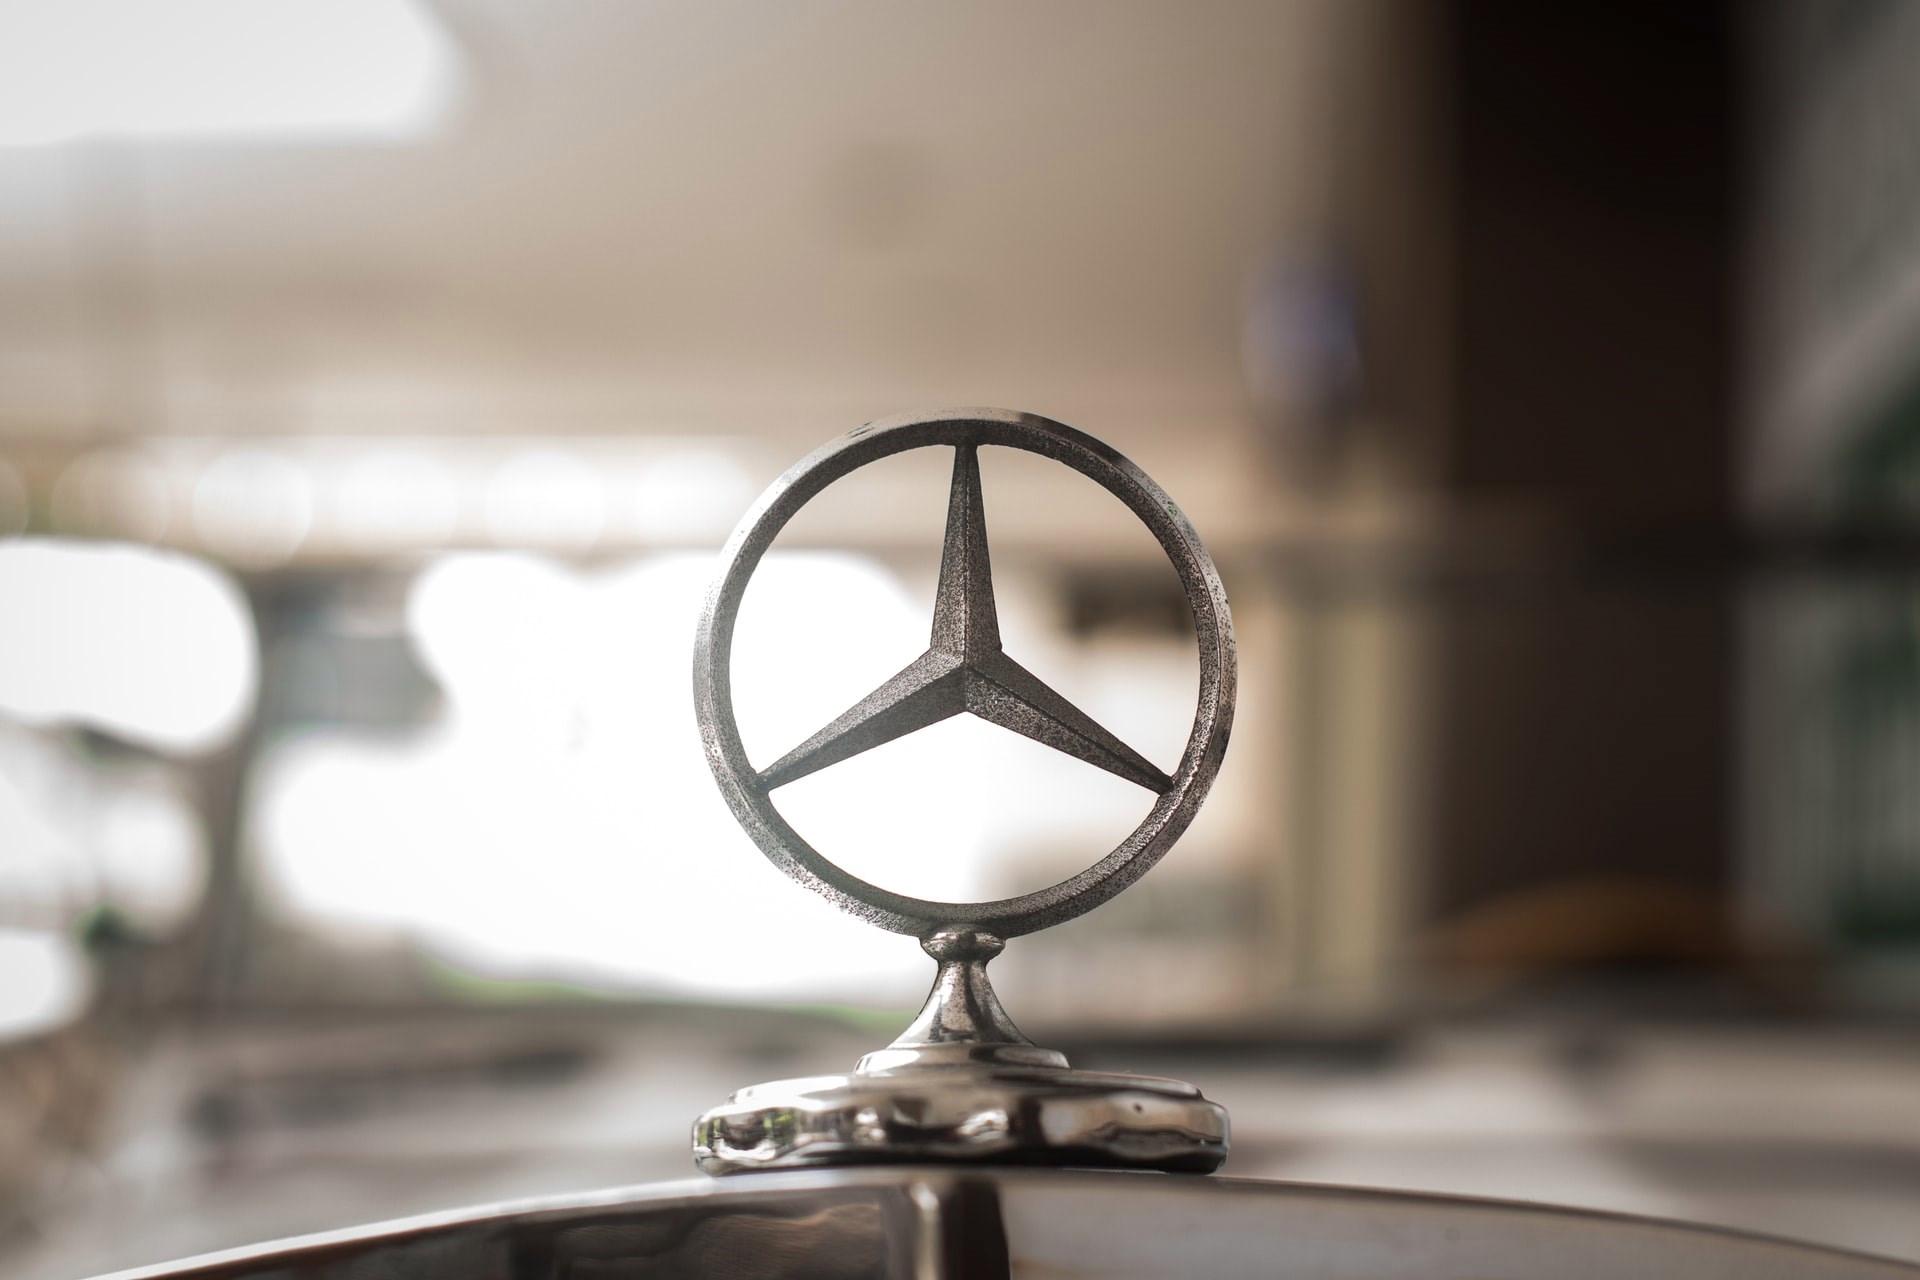 Mercedes yanlışlıkla kaynak kodunu ve ticari sırlarını tüm dünyayla paylaştı